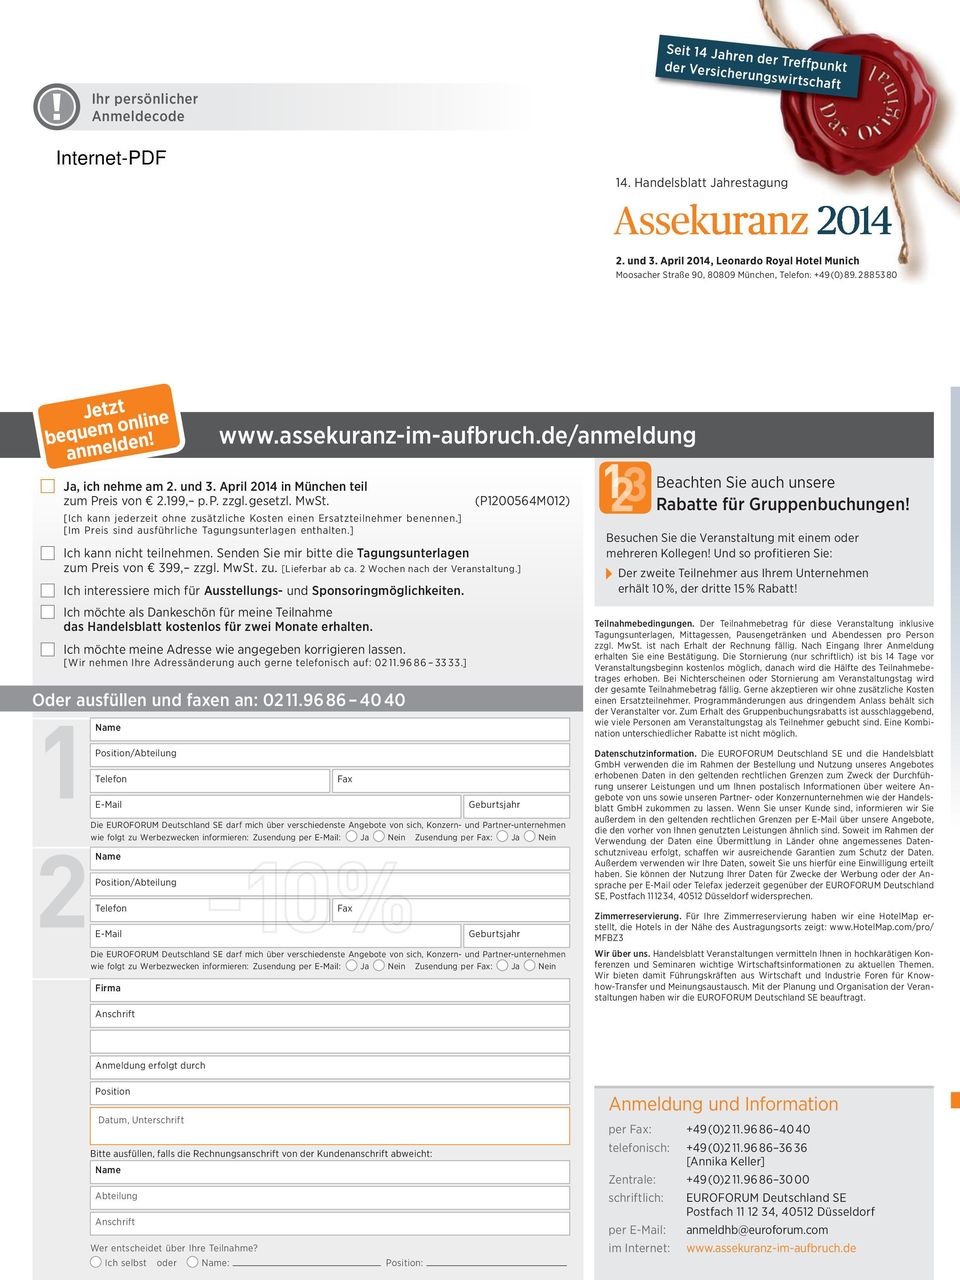 April 2014 in München teil zum Preis von 2.199, p. P. zzgl. gesetzl. MwSt. [Ich kann jederzeit ohne zusätzliche Kosten einen Ersatzteilnehmer benennen.